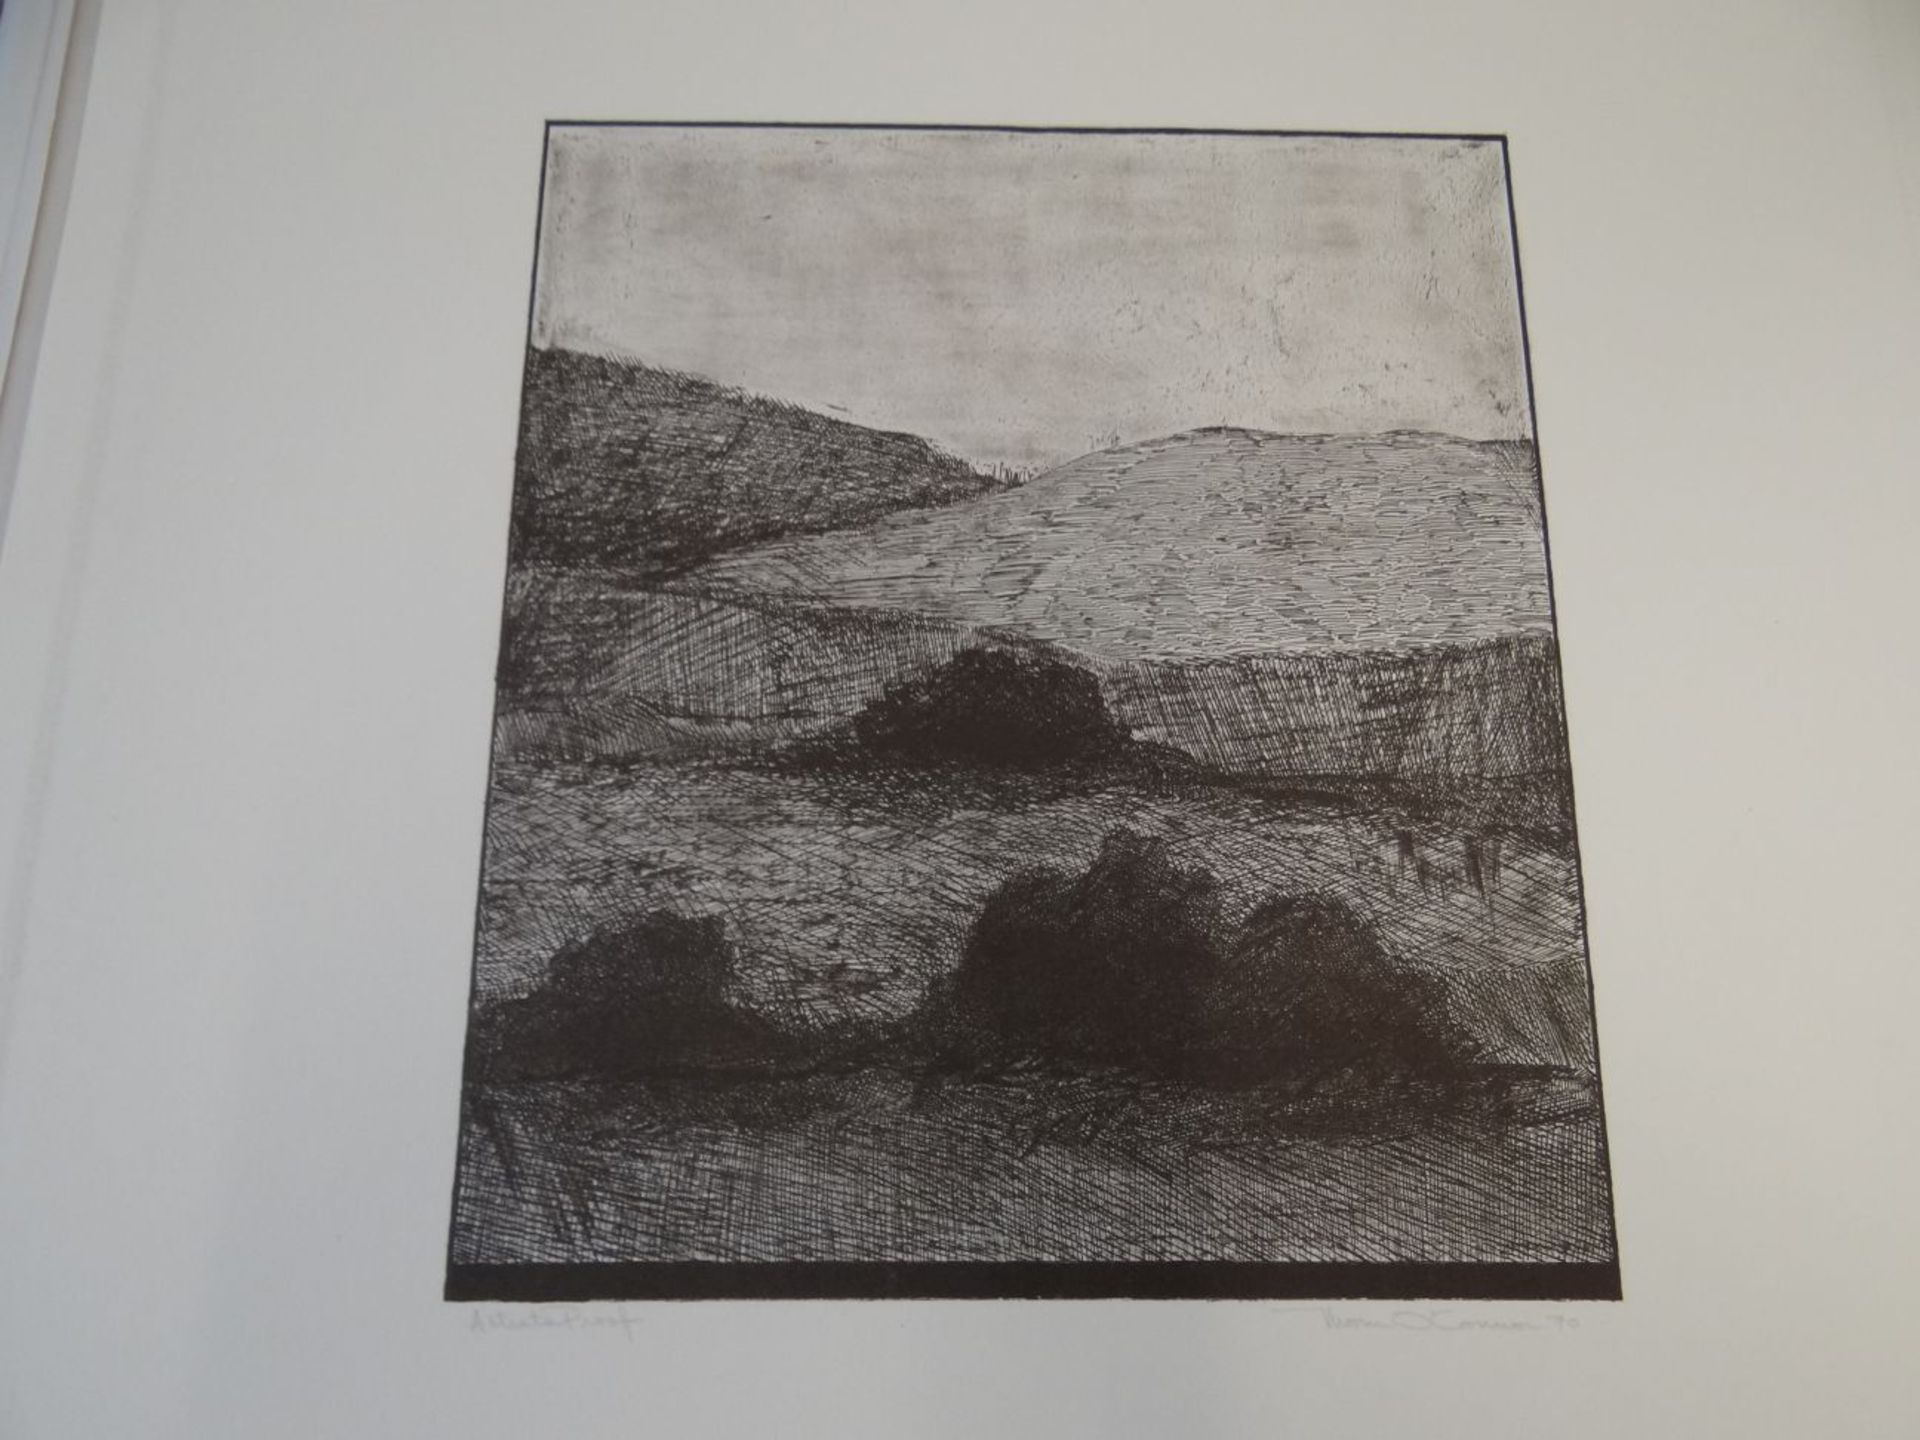 Thom. O'Connor, 1970 "Landschaft" Lithografie E.A proof, BG 55x45 cm - Image 2 of 4